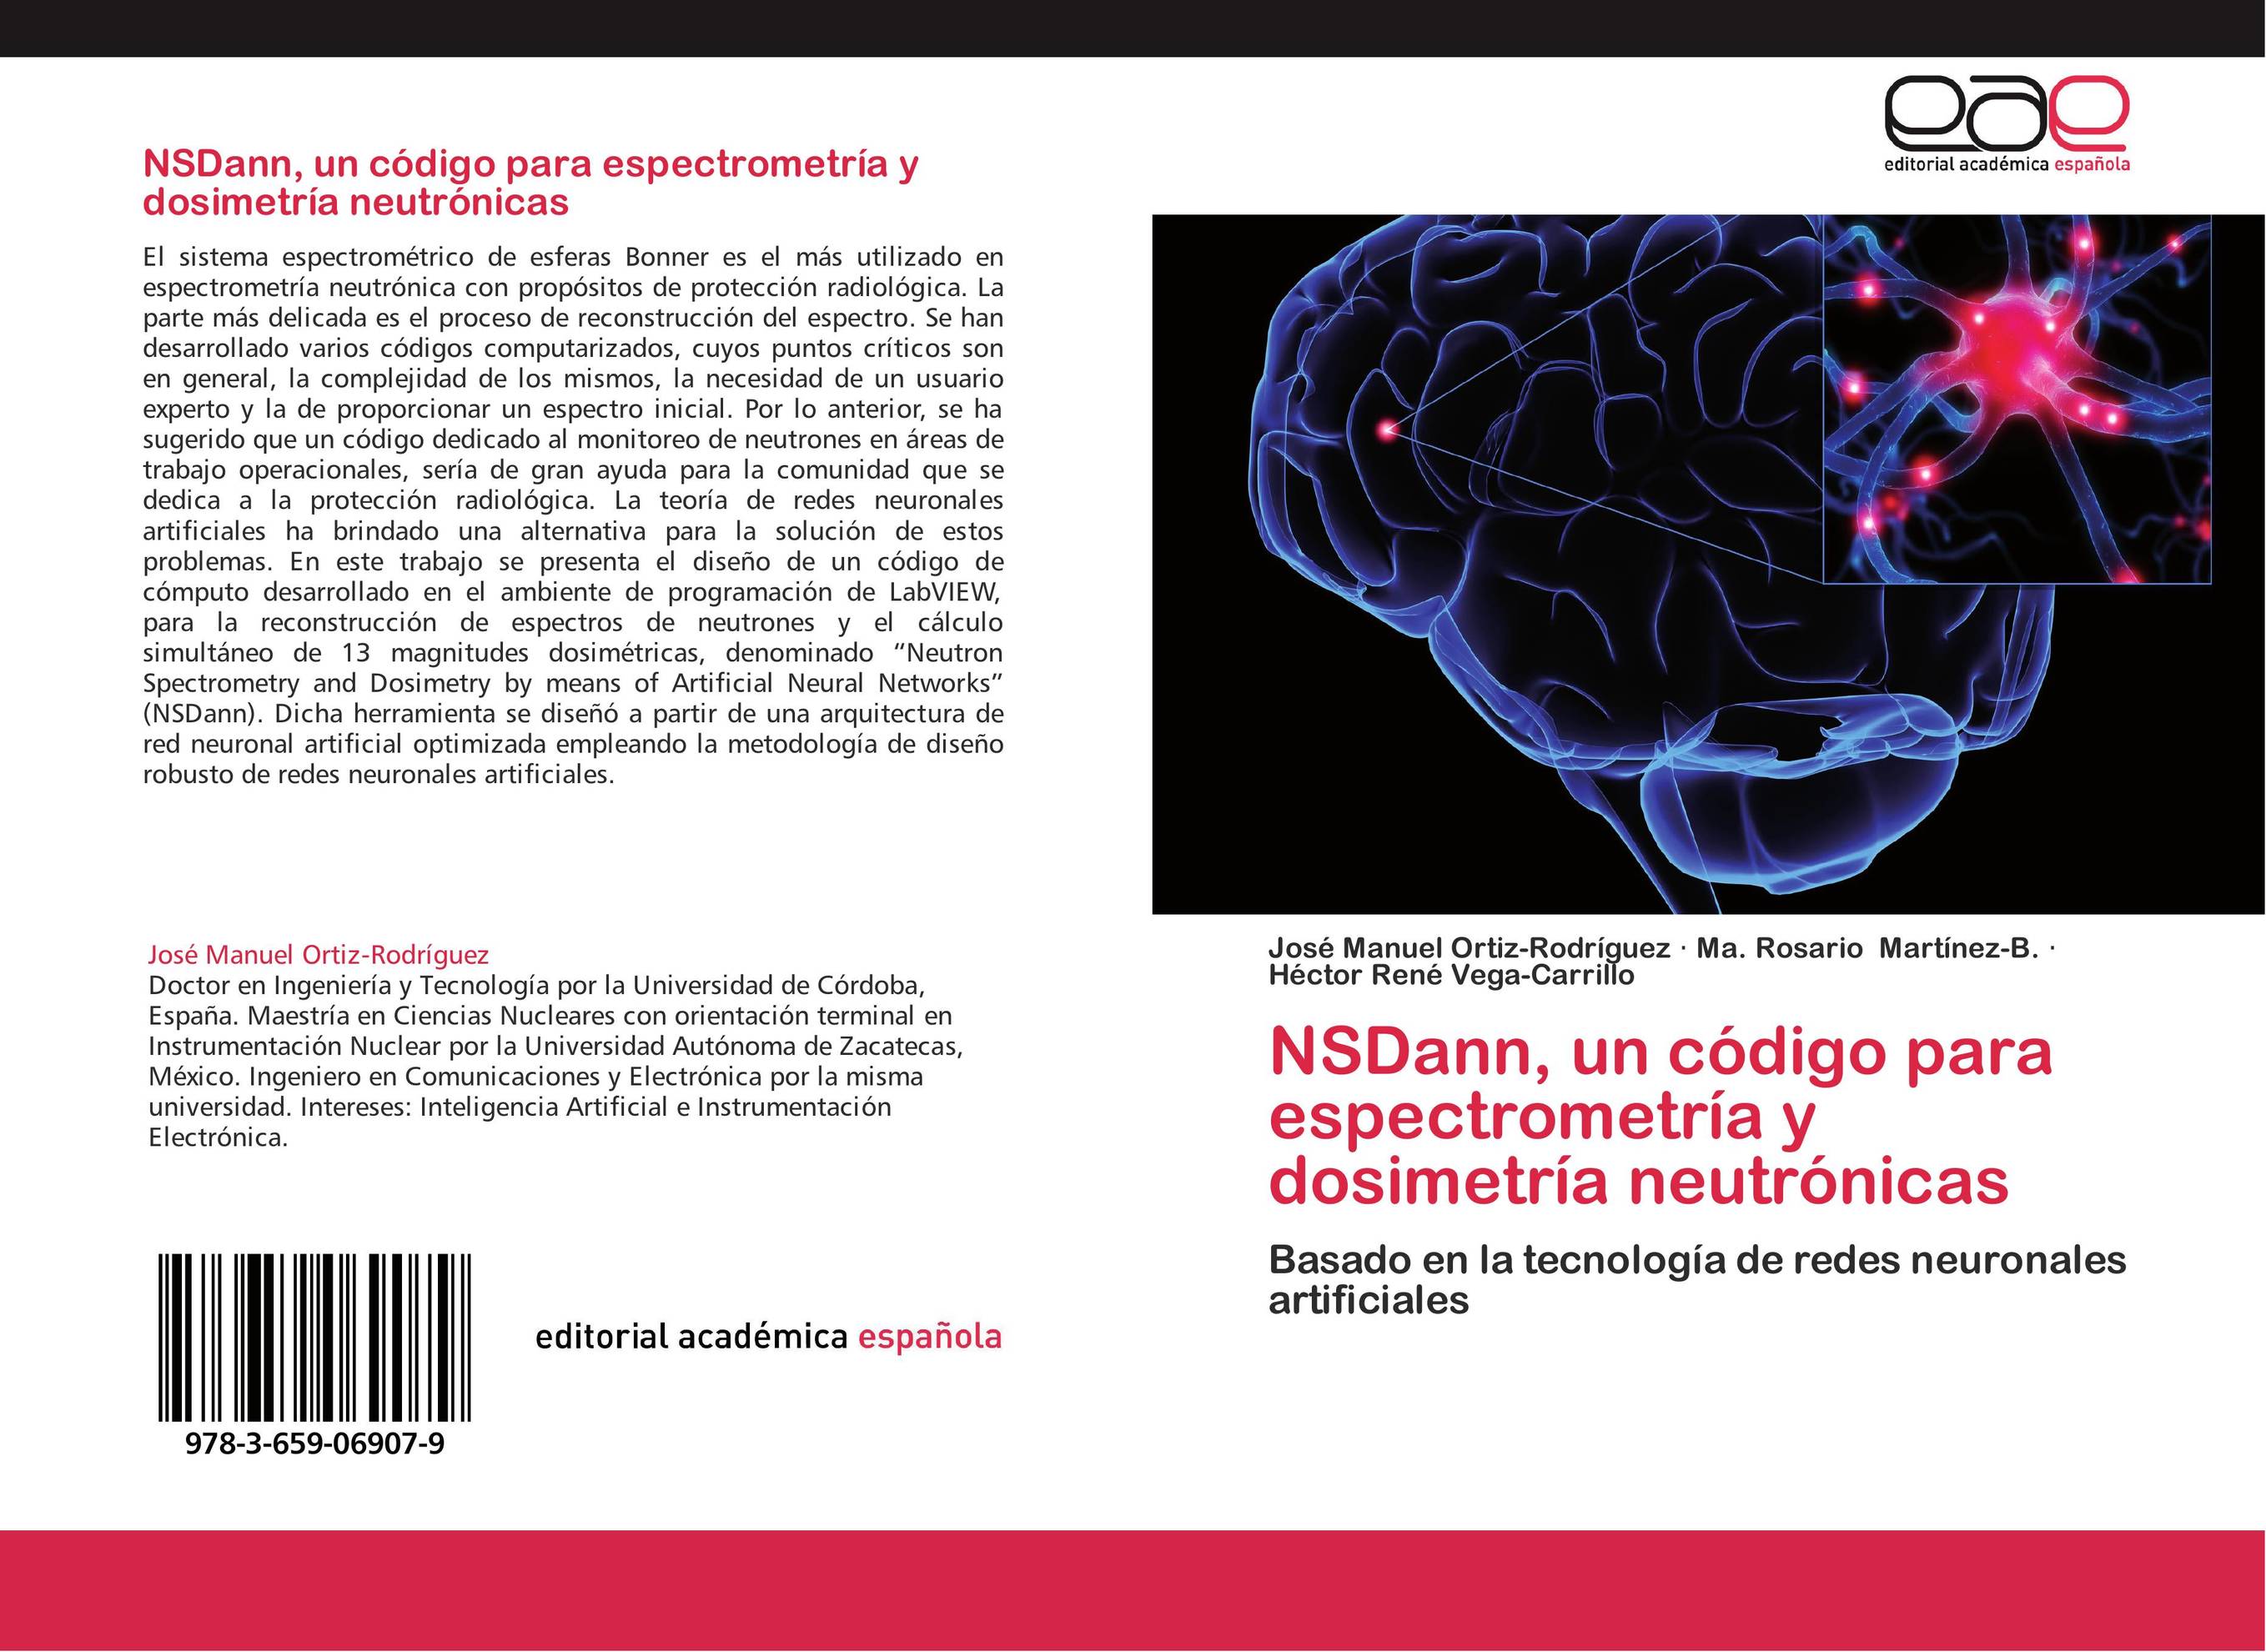 NSDann, un código para espectrometría y dosimetría neutrónicas